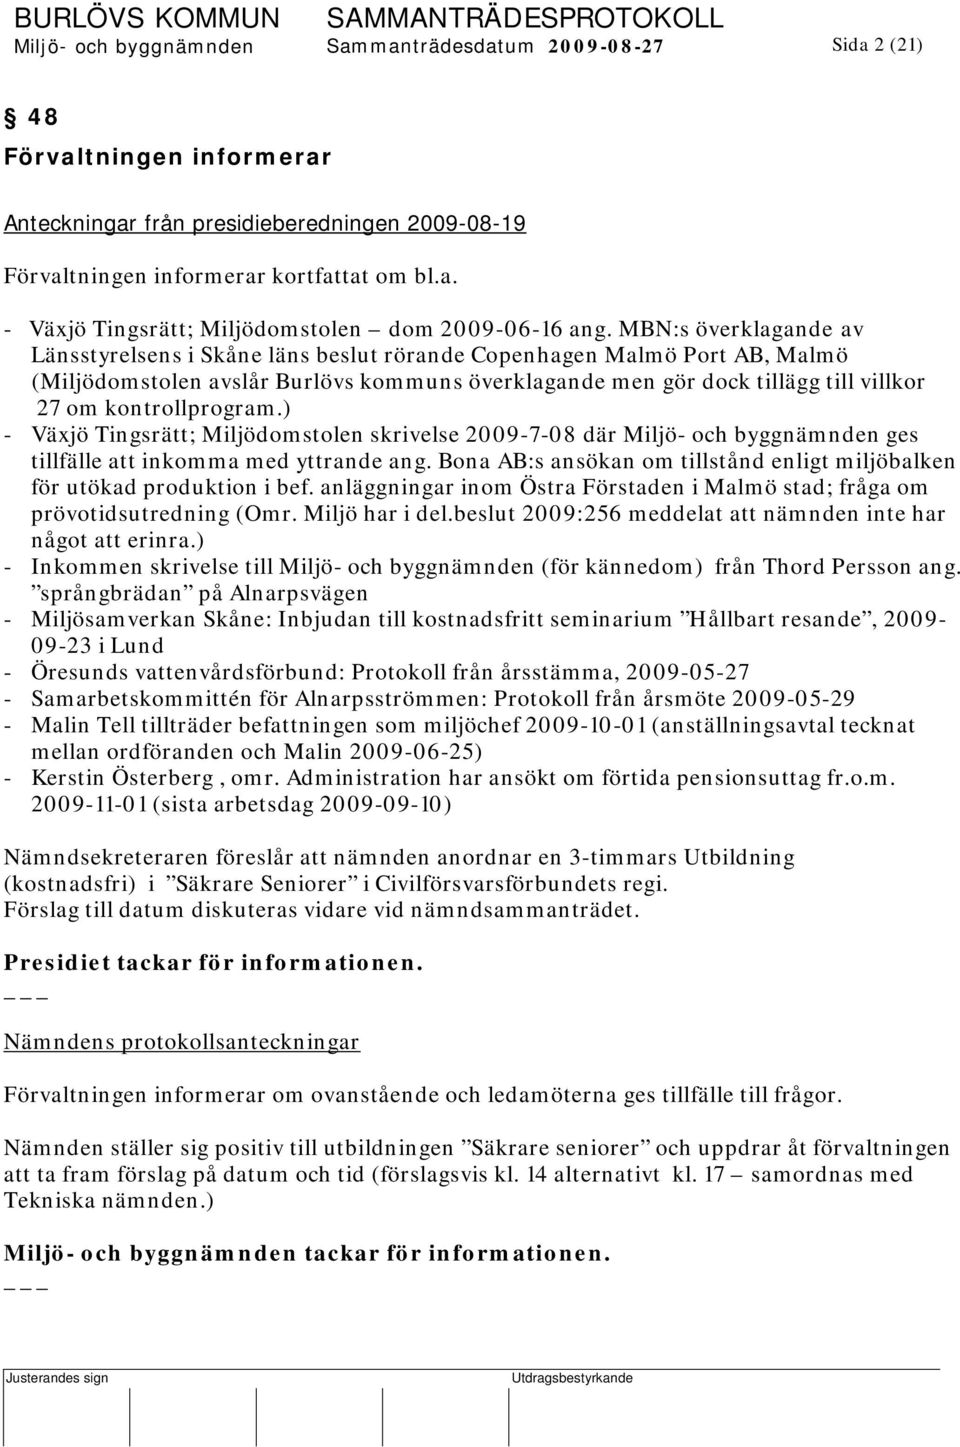 kontrollprogram.) - Växjö Tingsrätt; Miljödomstolen skrivelse 2009-7-08 där Miljö- och byggnämnden ges tillfälle att inkomma med yttrande ang.